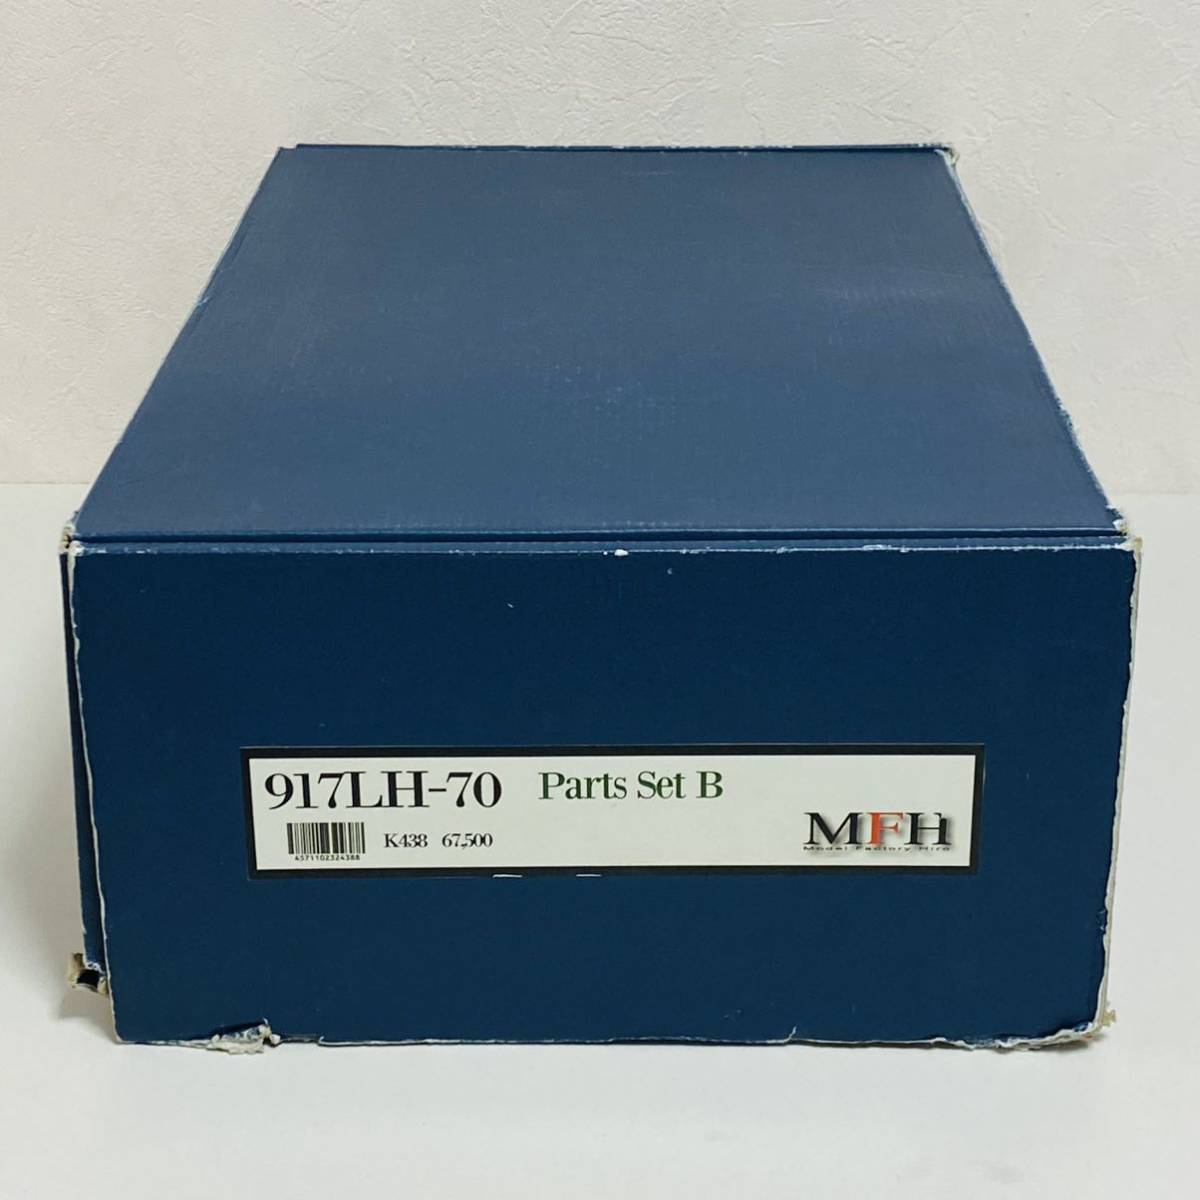 【未組立品】MFH モデルファクトリーヒロ 1/12 フルディティールキット ポルシェ 917LH-70 Parts Set B Ver.B K438